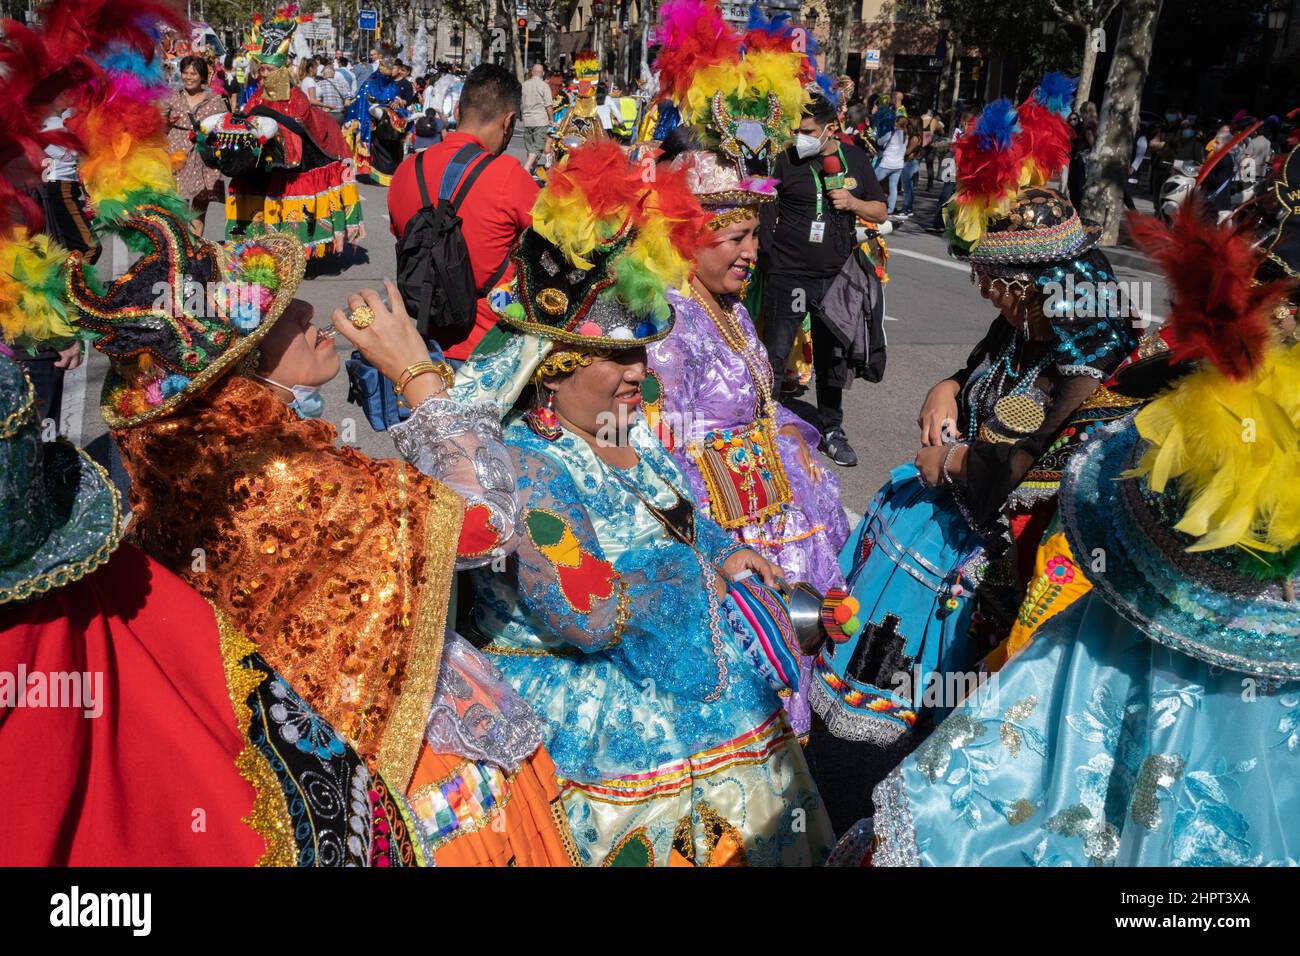 Les femmes boliviennes portant des robes brodées traditionnelles et des chapeaux colorés lors d'une pause dans le défilé de la Journée du patrimoine hispanique à Barcelone, Espagne Banque D'Images